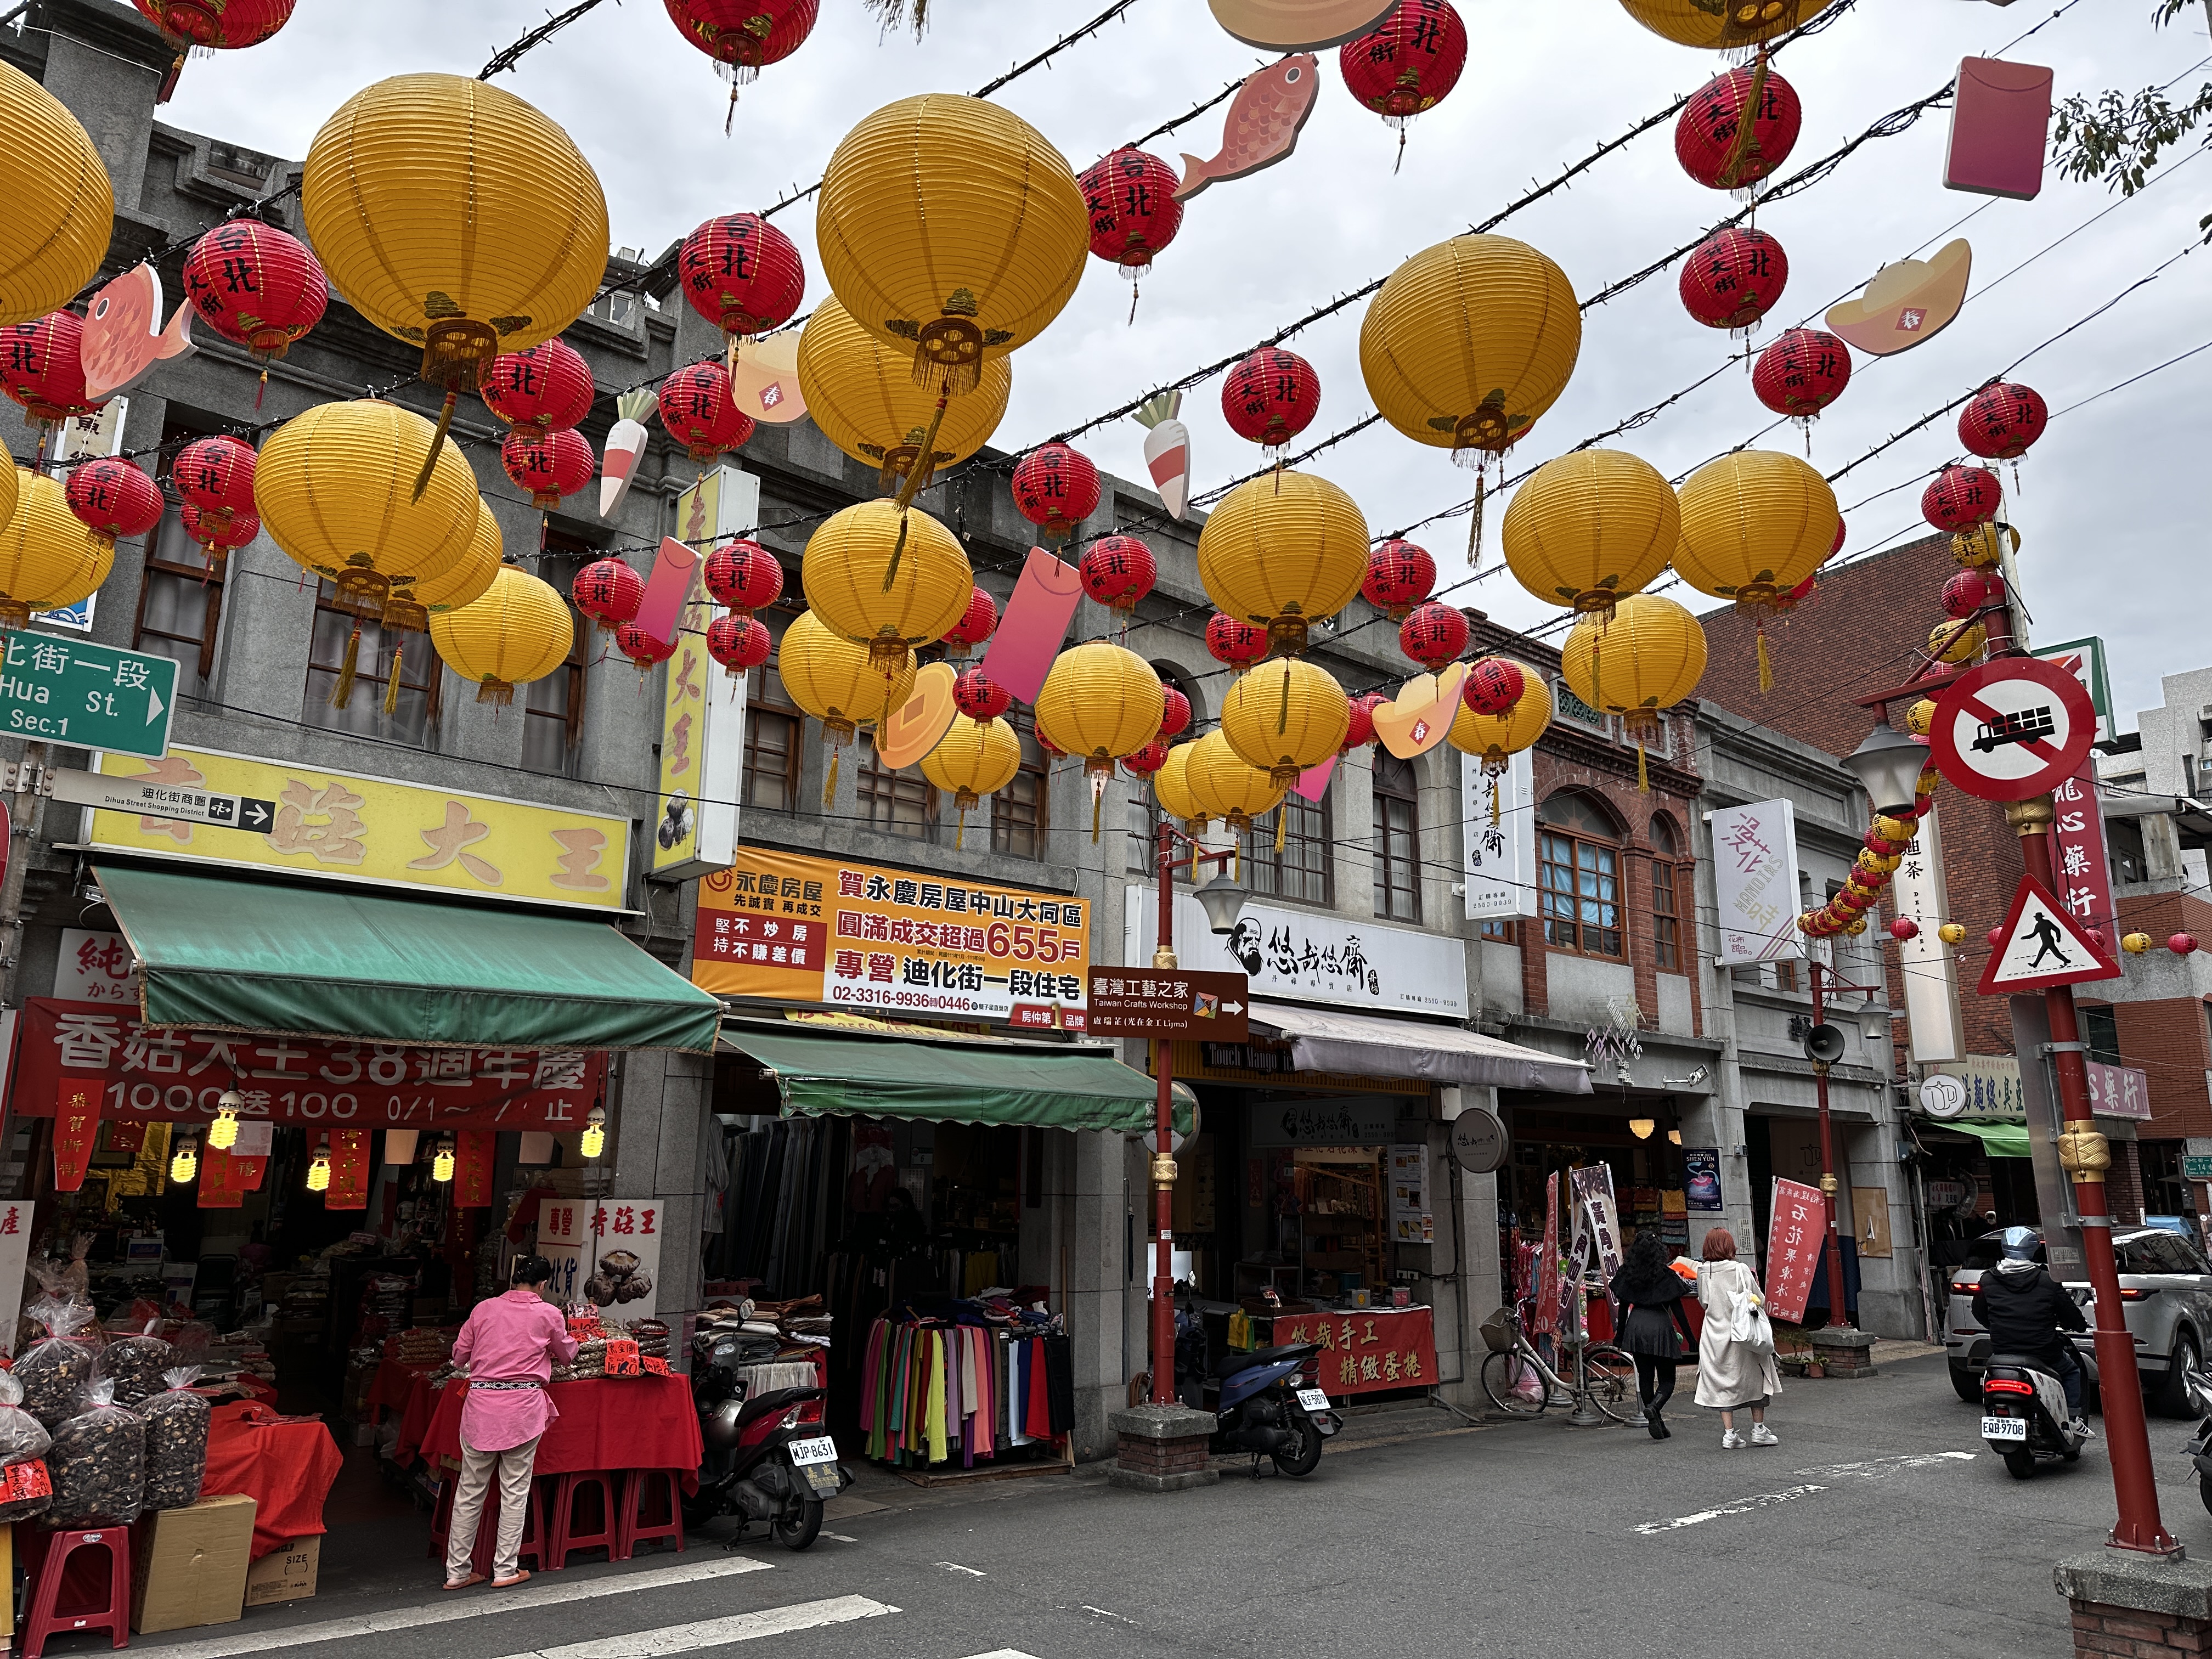 Taiwan's Old Street